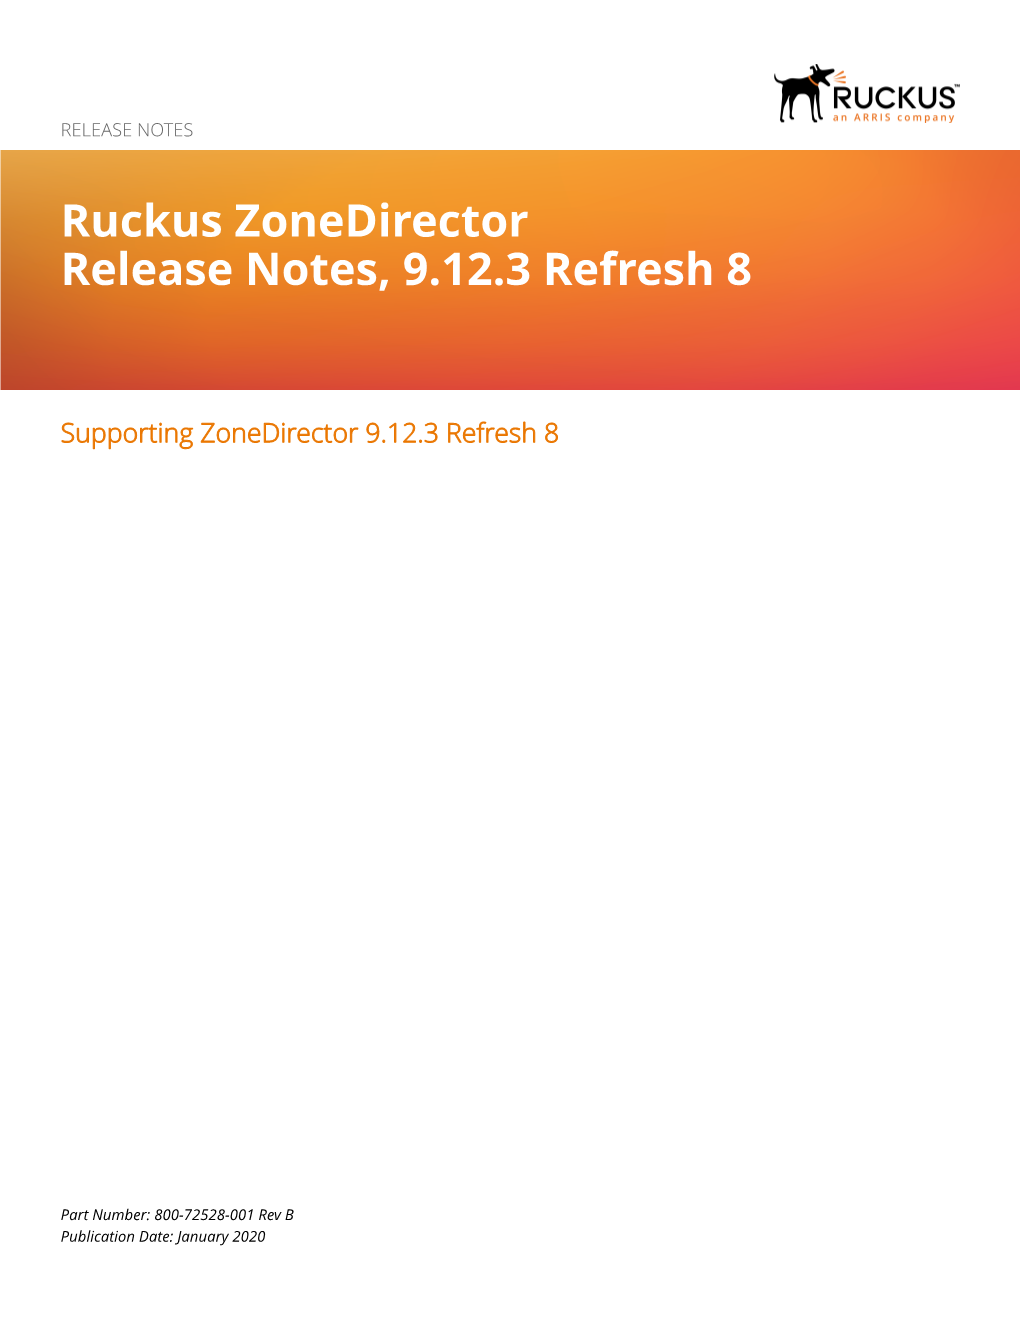 Ruckus Zonedirector Release Notes, 9.12.3 Refresh 8